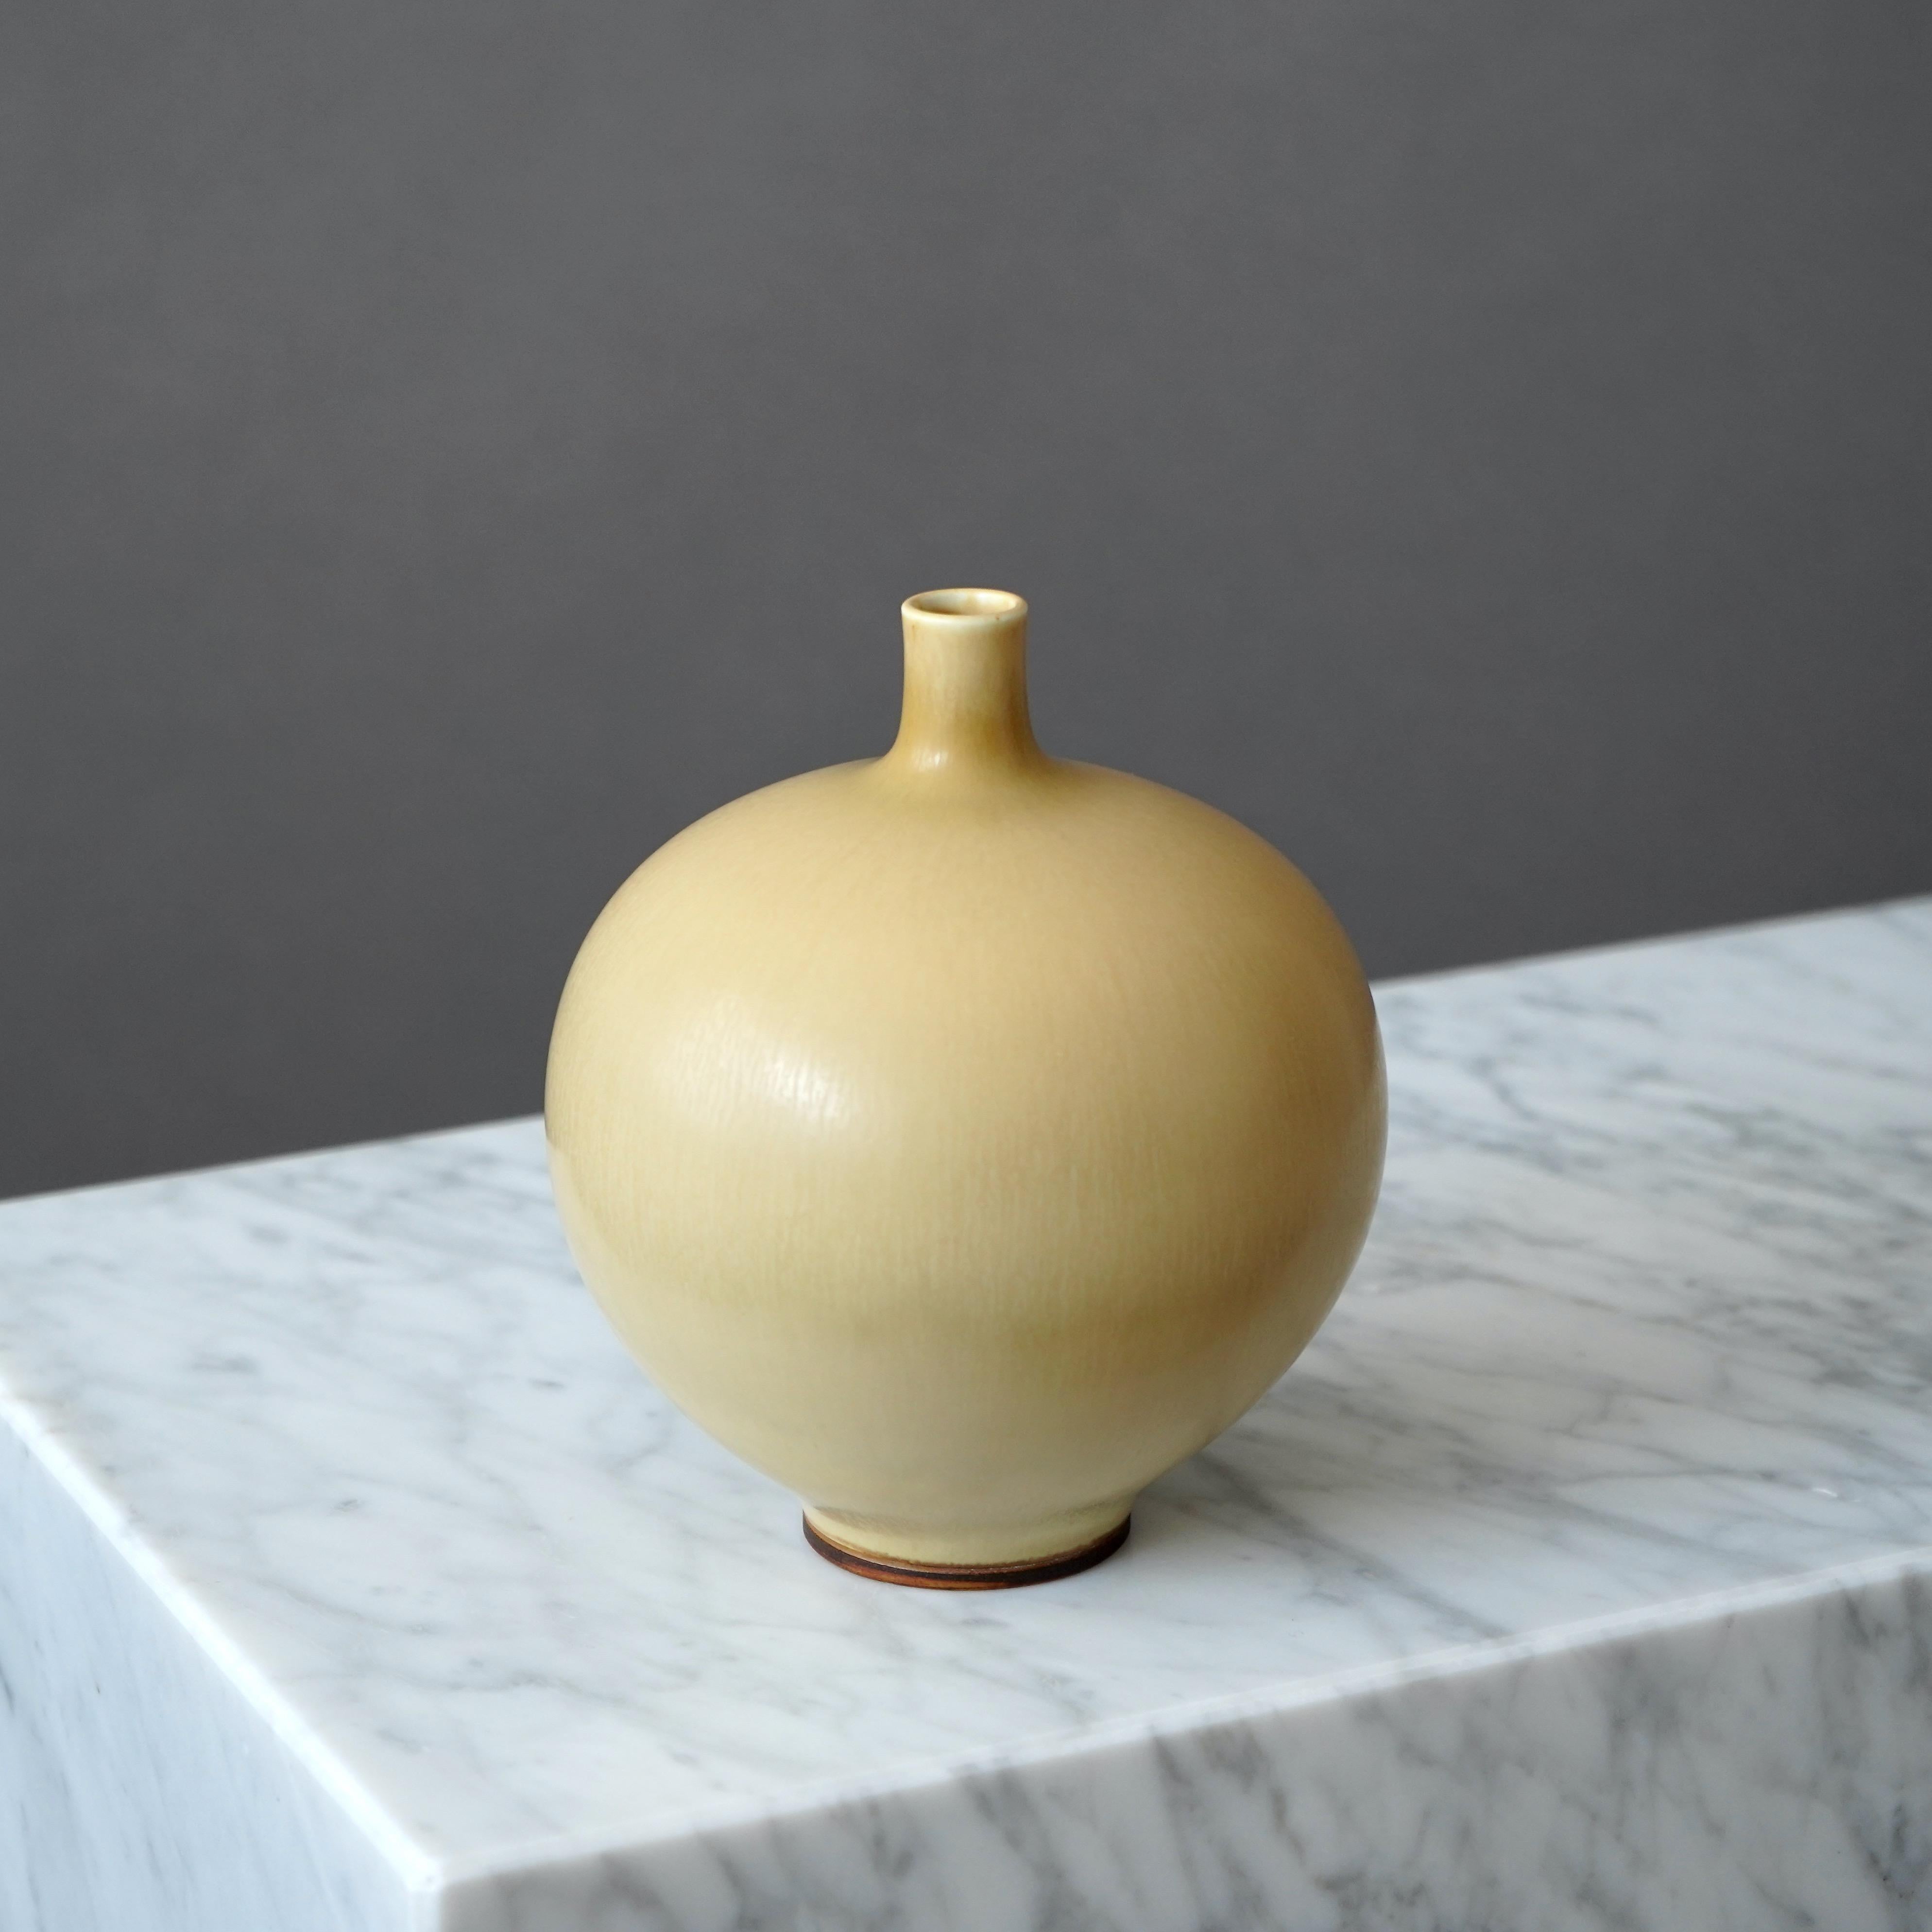 Scandinavian Modern Stoneware Vase by Berndt Friberg for Gustavsberg Studio, Sweden, 1964 For Sale